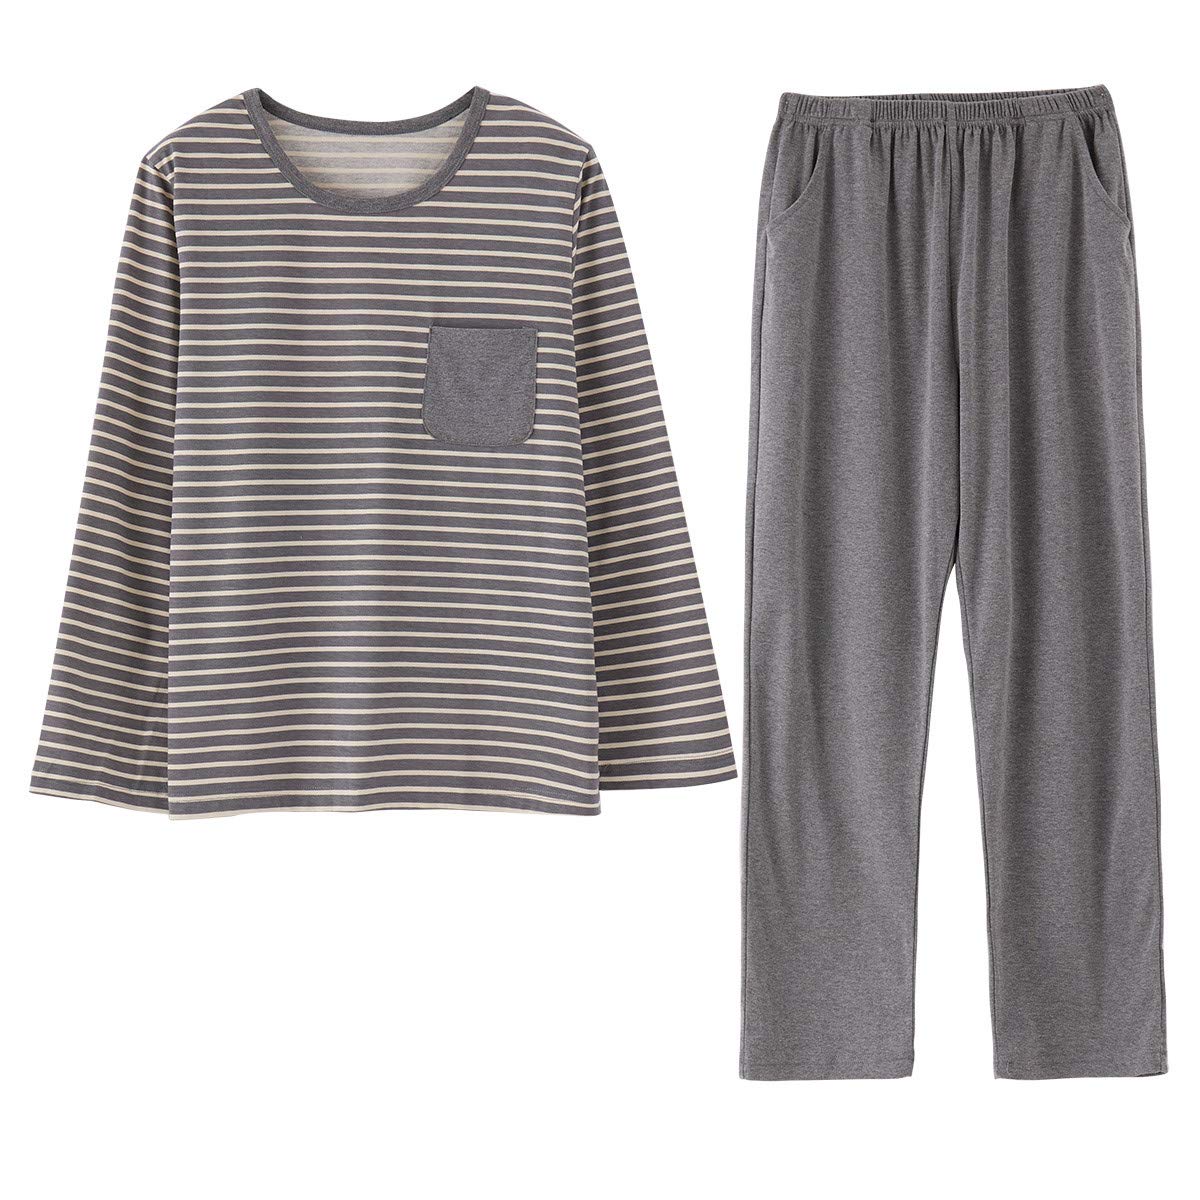 Family Pajamas Matching Sets Pyjamas,Striped Long Sleeve Sleepwear Top ...